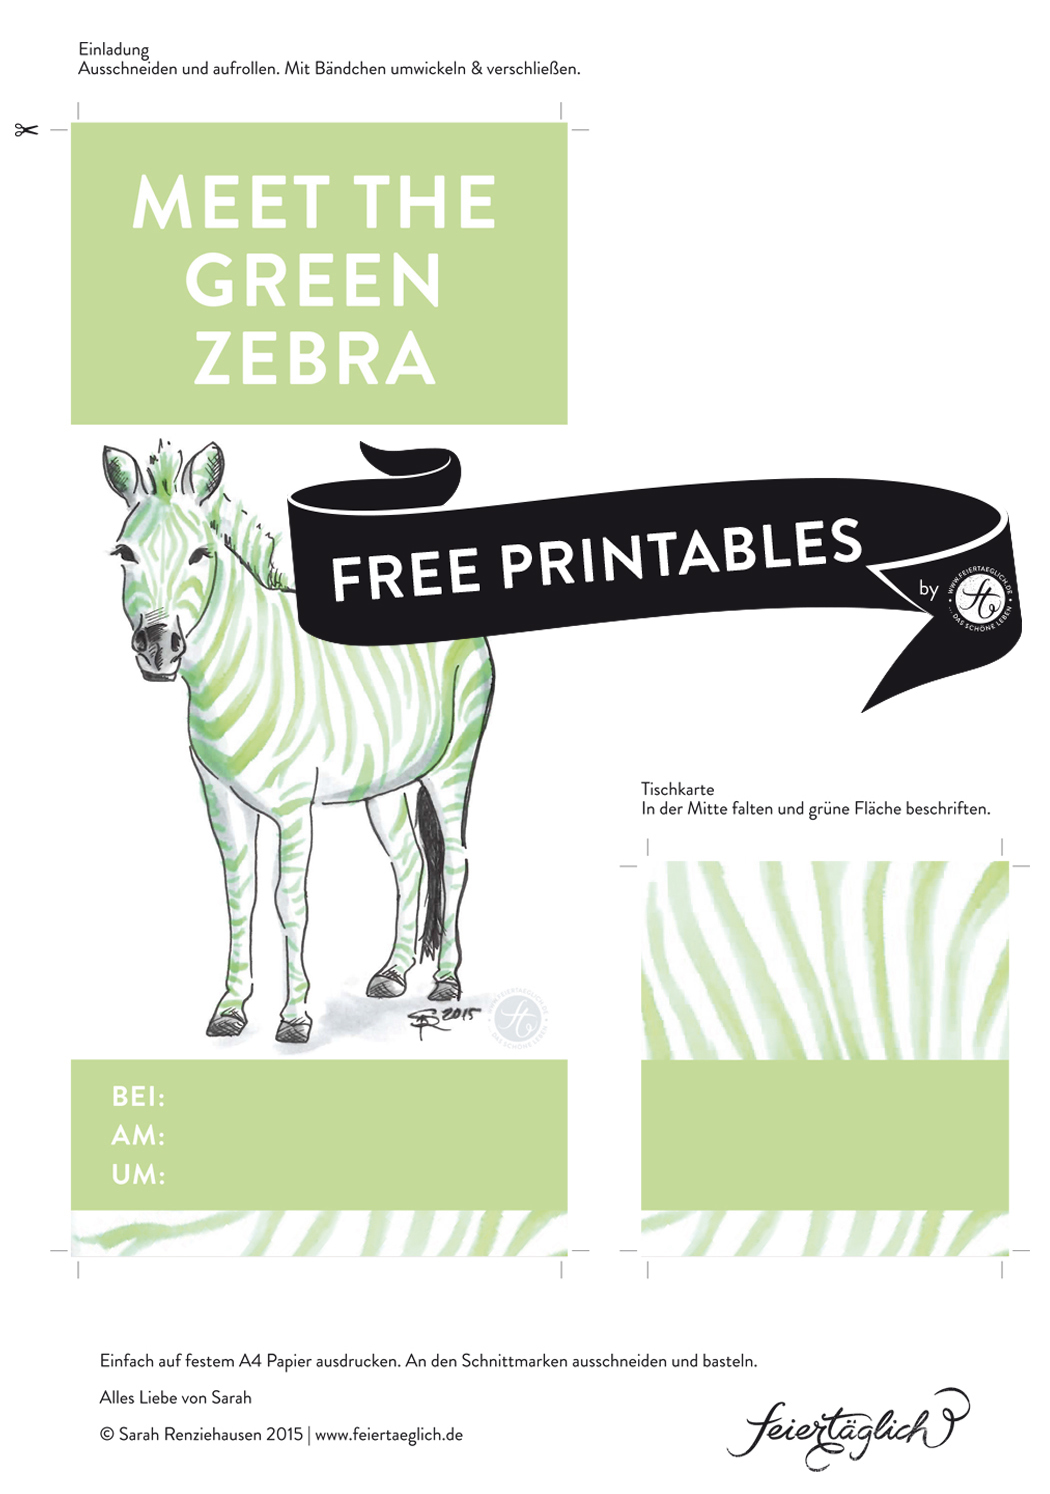 Einladung, Tischkarten, Green-Zebra-Party, Free Printables, Rezept für Kokos-Matcha-Green-Zebra Kuchen, Rührkuchen #meetthegreenzebra #ichbacksmir